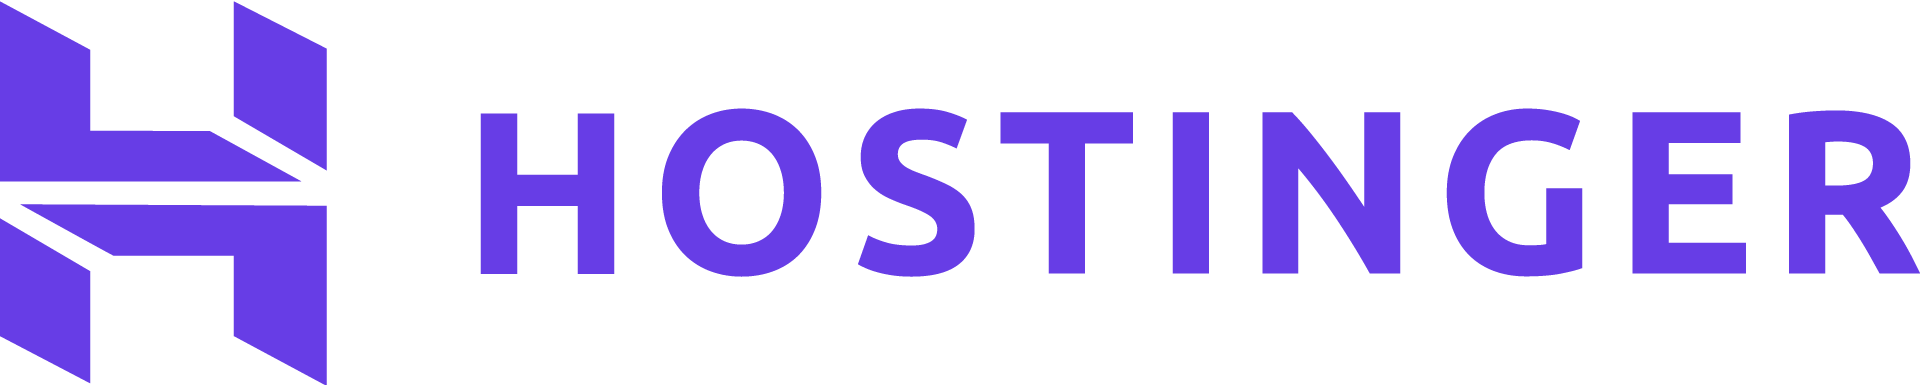 Hostinger logo, direct from their press kit